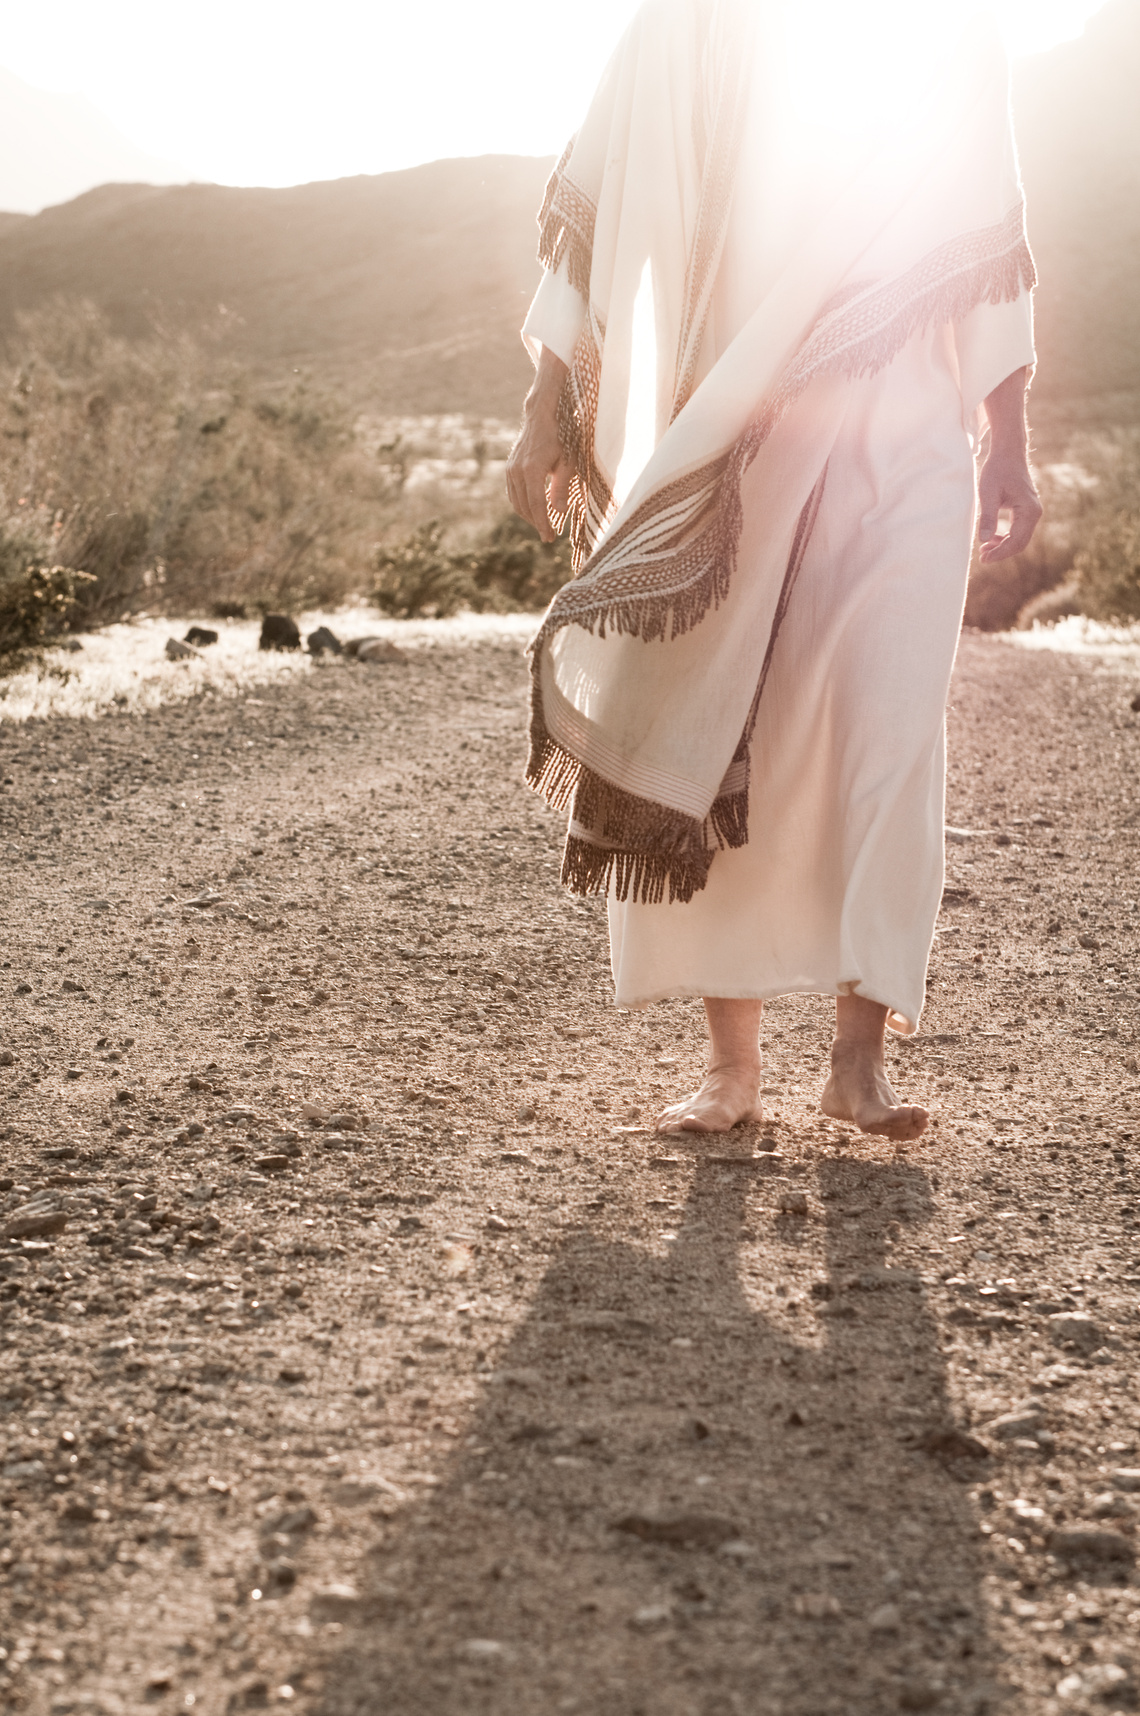 Jesus Walking Towards